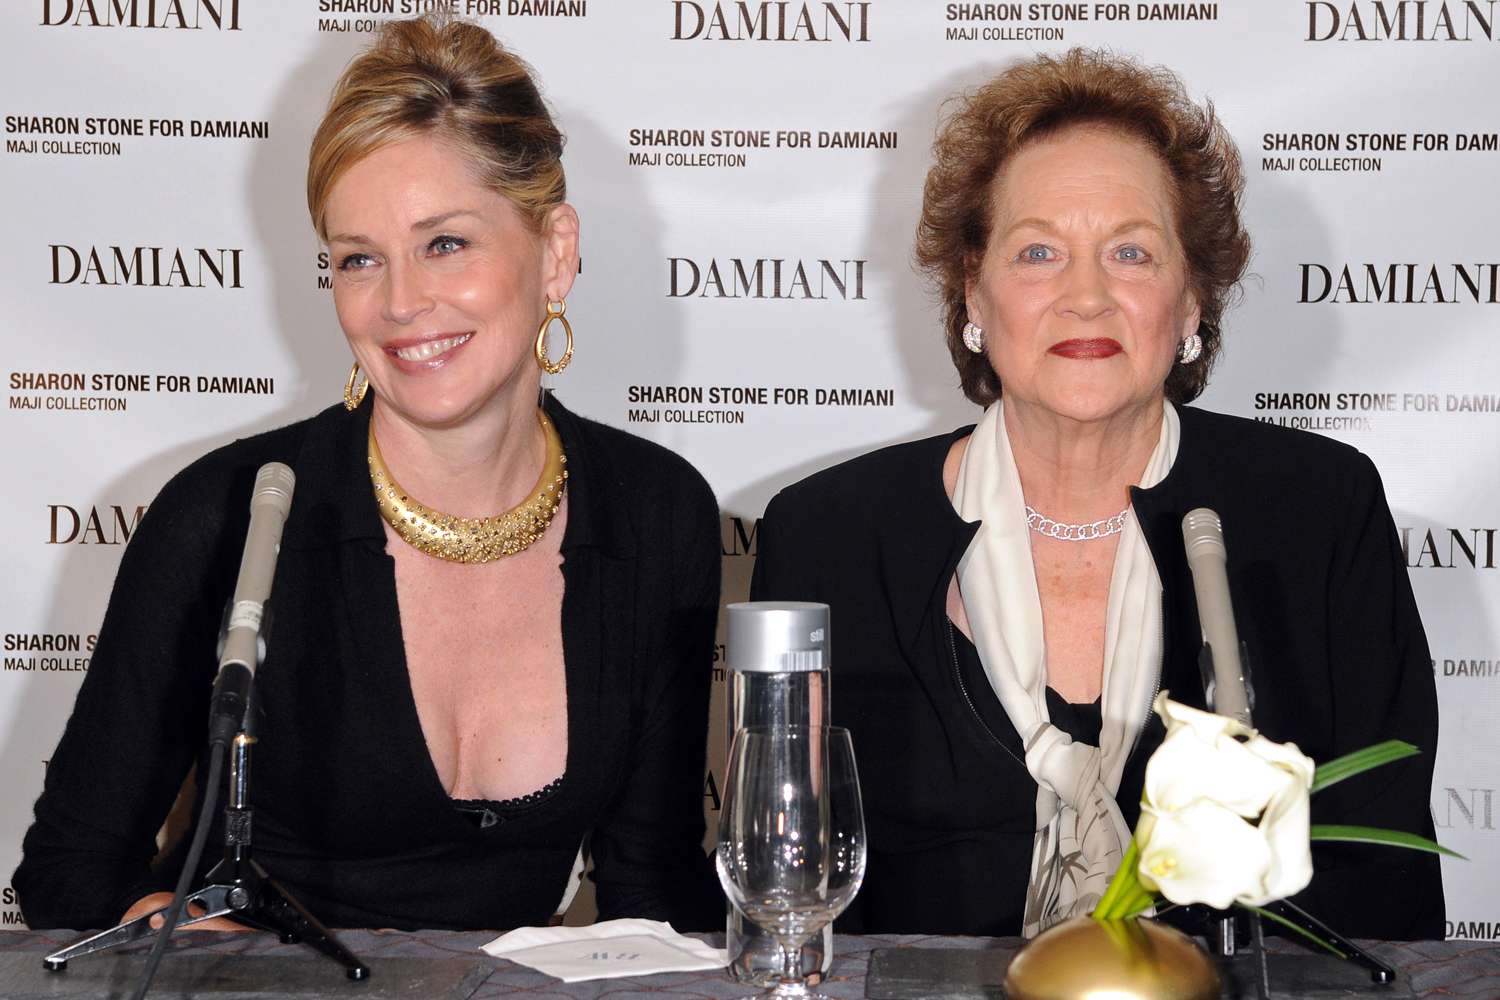 Aktorja Sharon Stone tregon nënën e saj dhe le të themi se janë si dy pika uji…